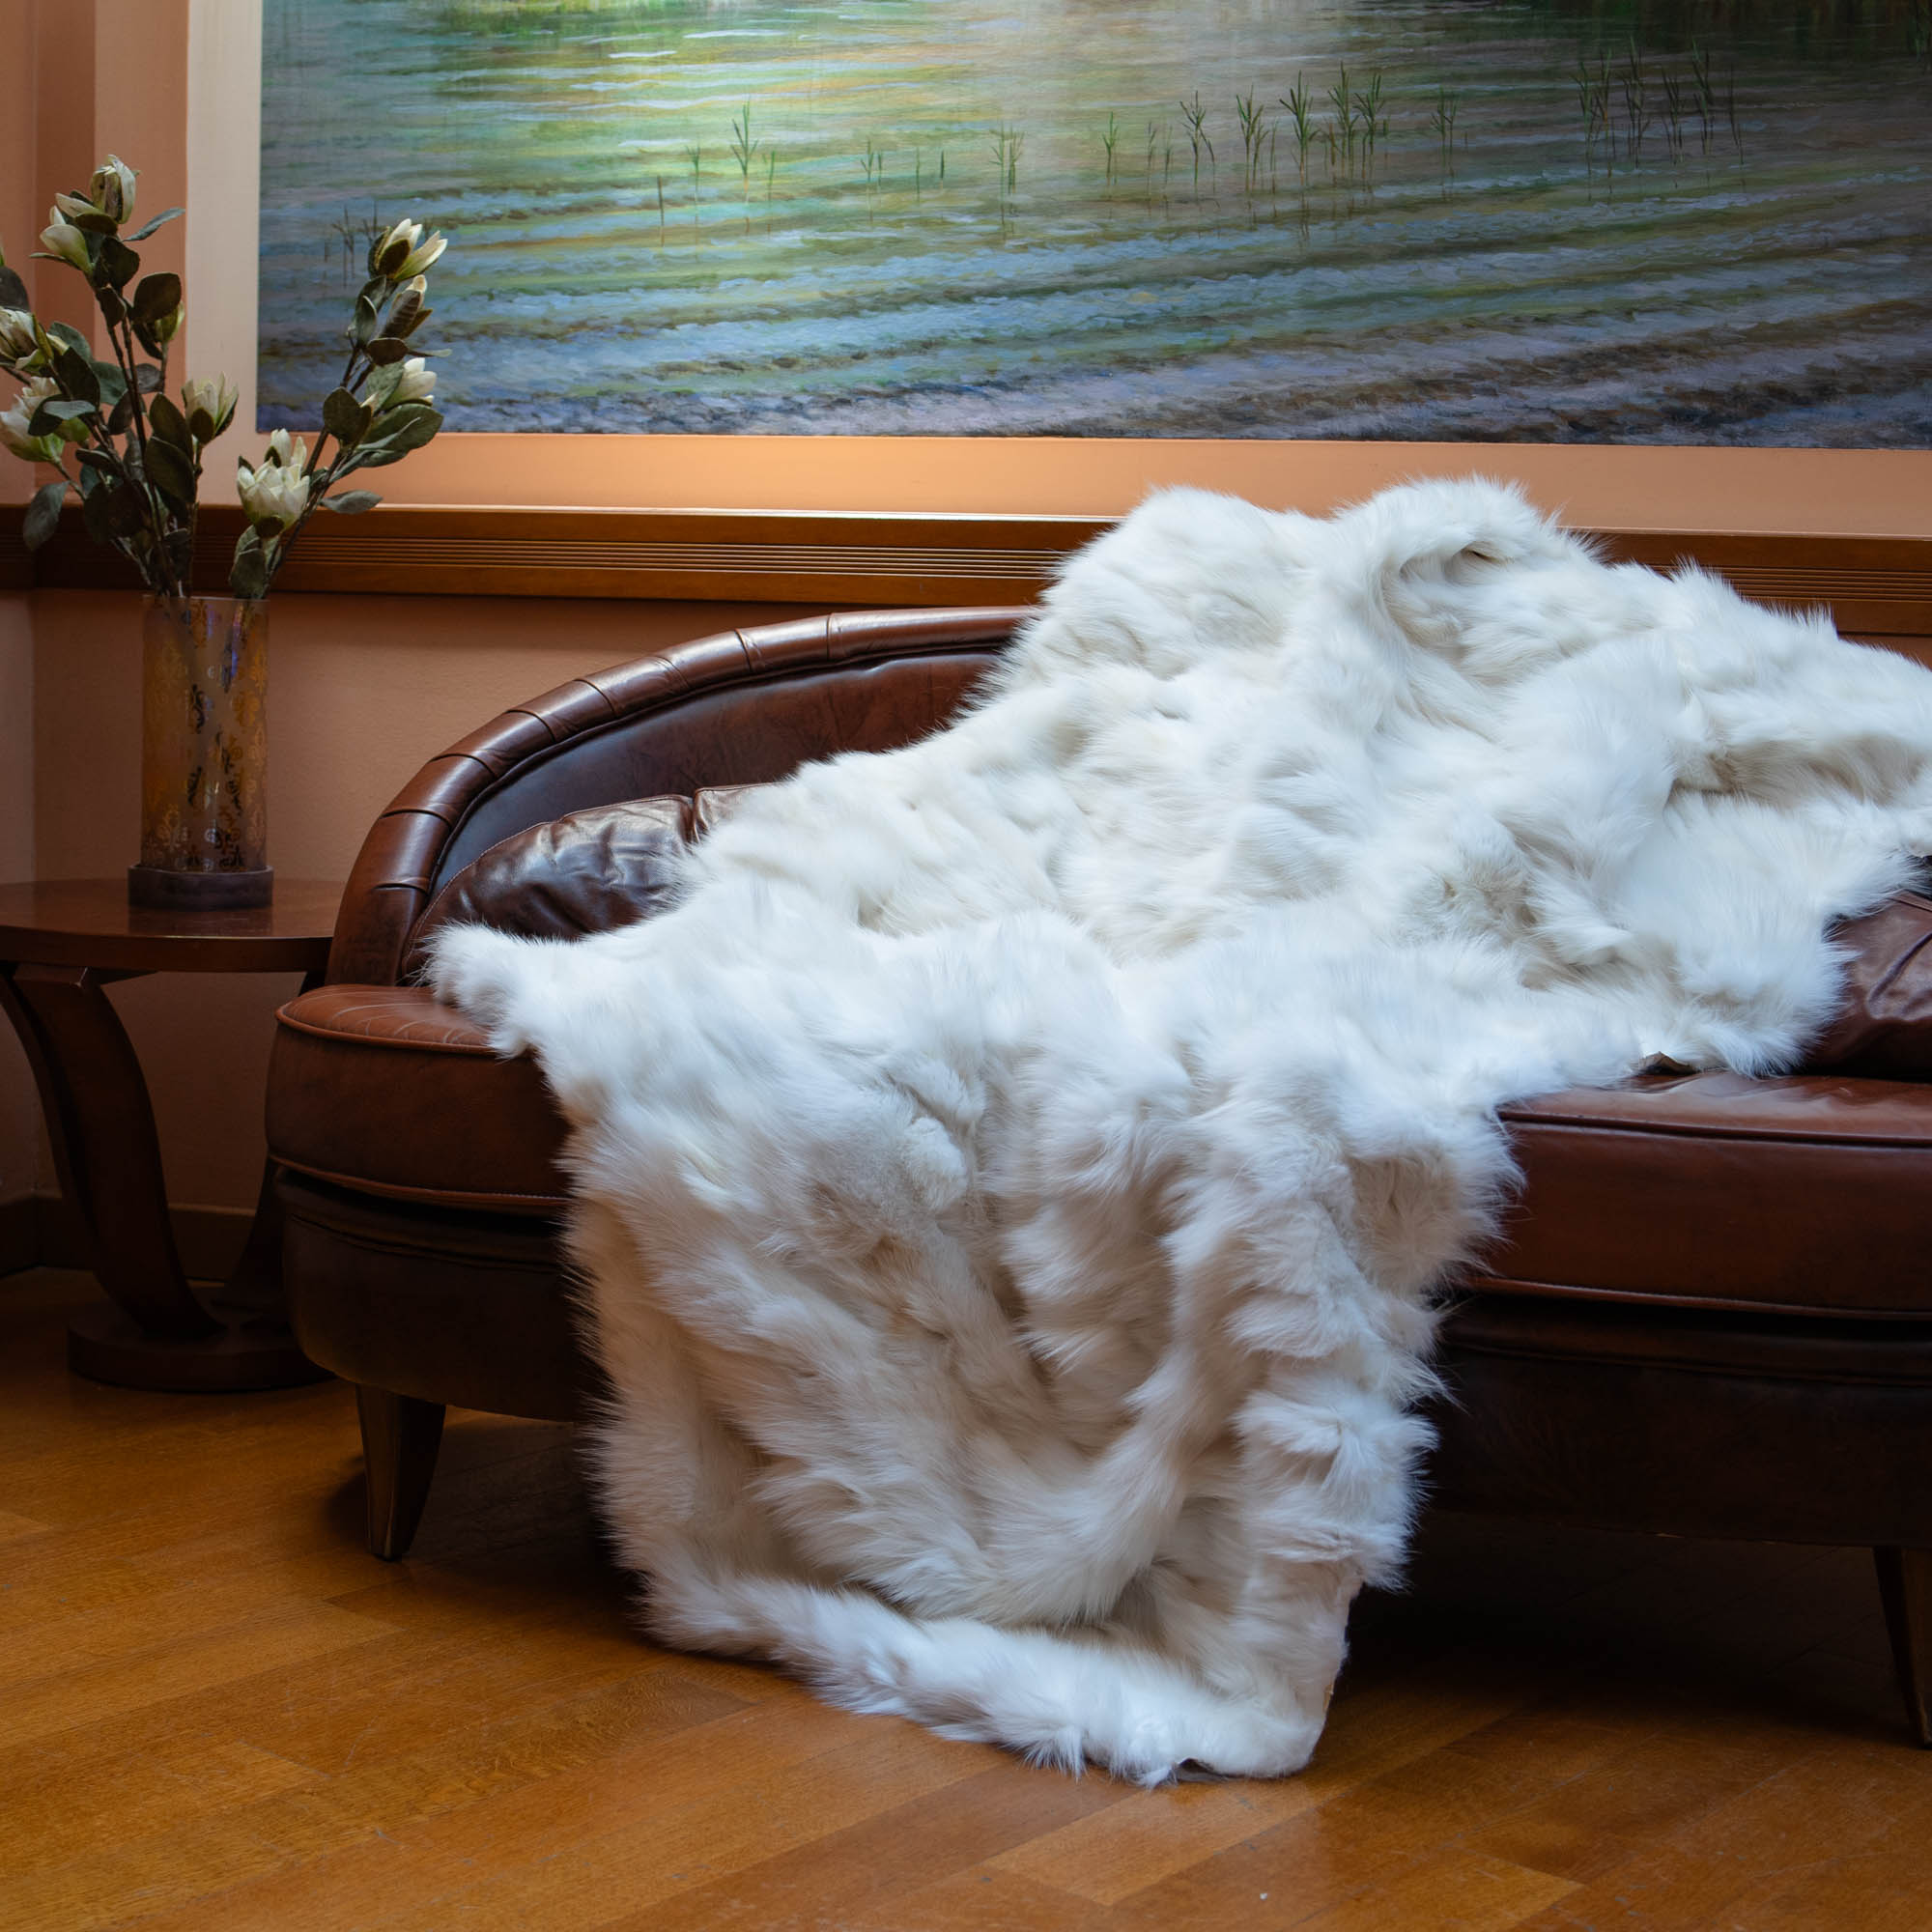 Fox fur blanket in white color